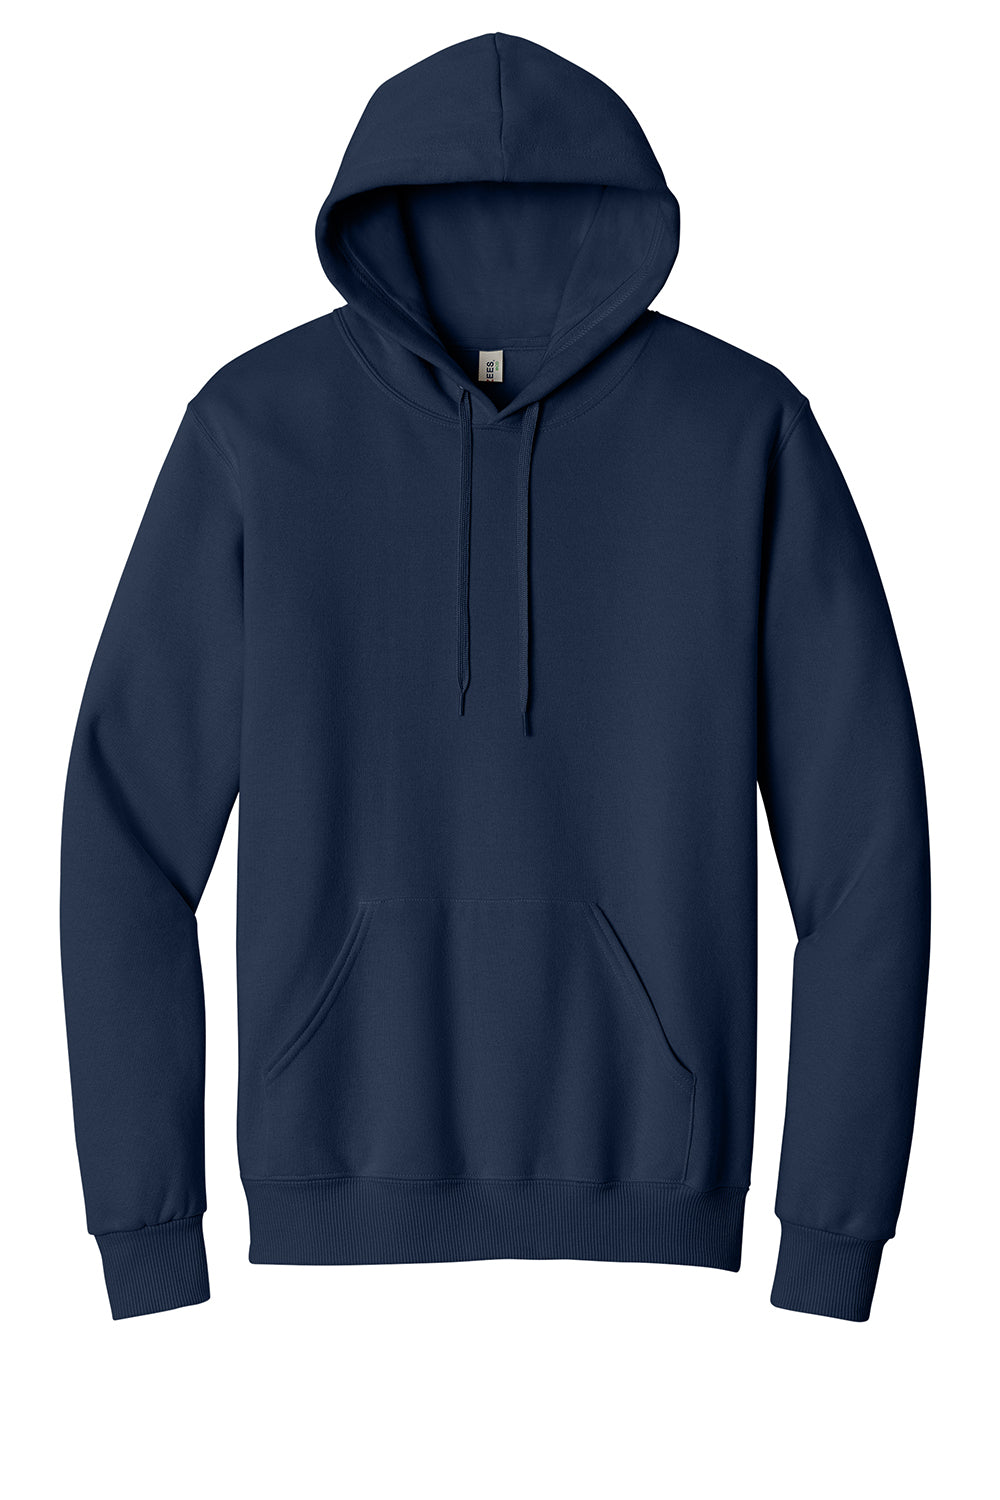 Jerzees 700M Mens Eco Premium Hooded Sweatshirt Hoodie Navy Blue Flat Front